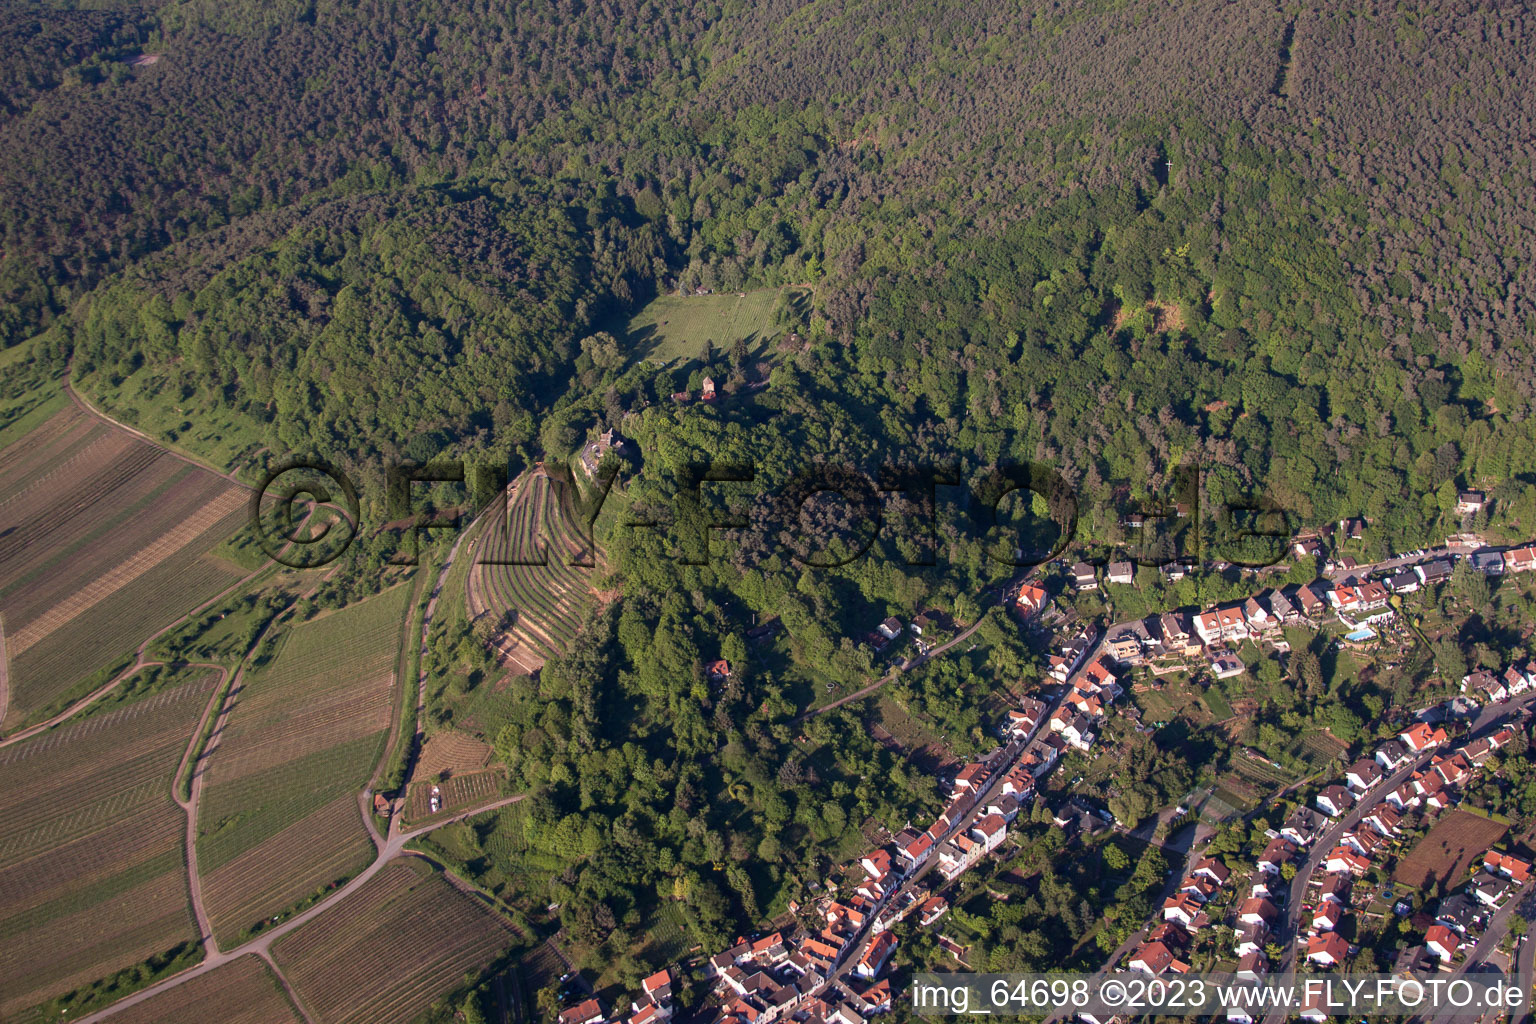 Sankt Martin im Bundesland Rheinland-Pfalz, Deutschland aus der Drohnenperspektive